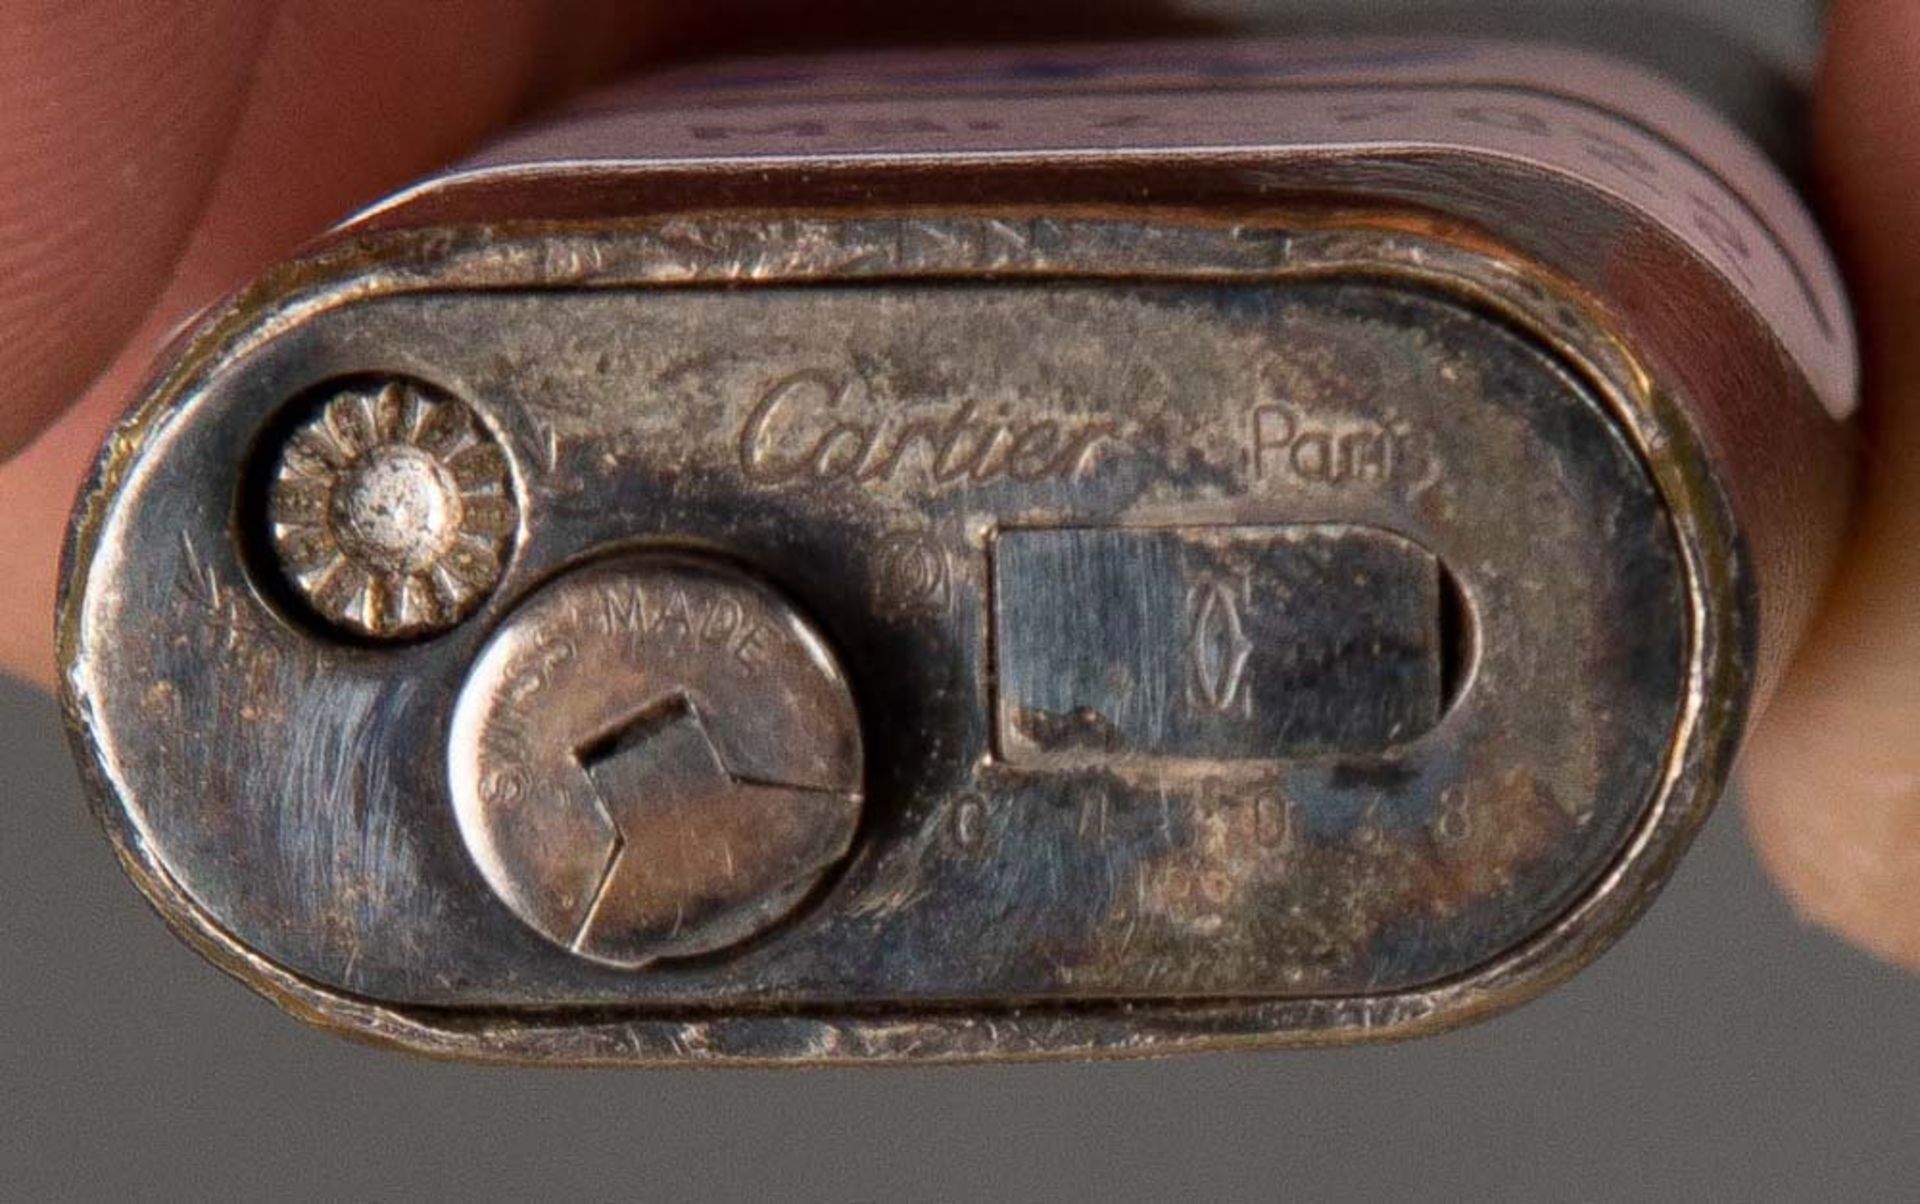 Cartier-Feuerzeug. Versilbert, am Boden gemarkt C.43038, H=7 cm. (Funktion ungeprüft) - Bild 2 aus 2